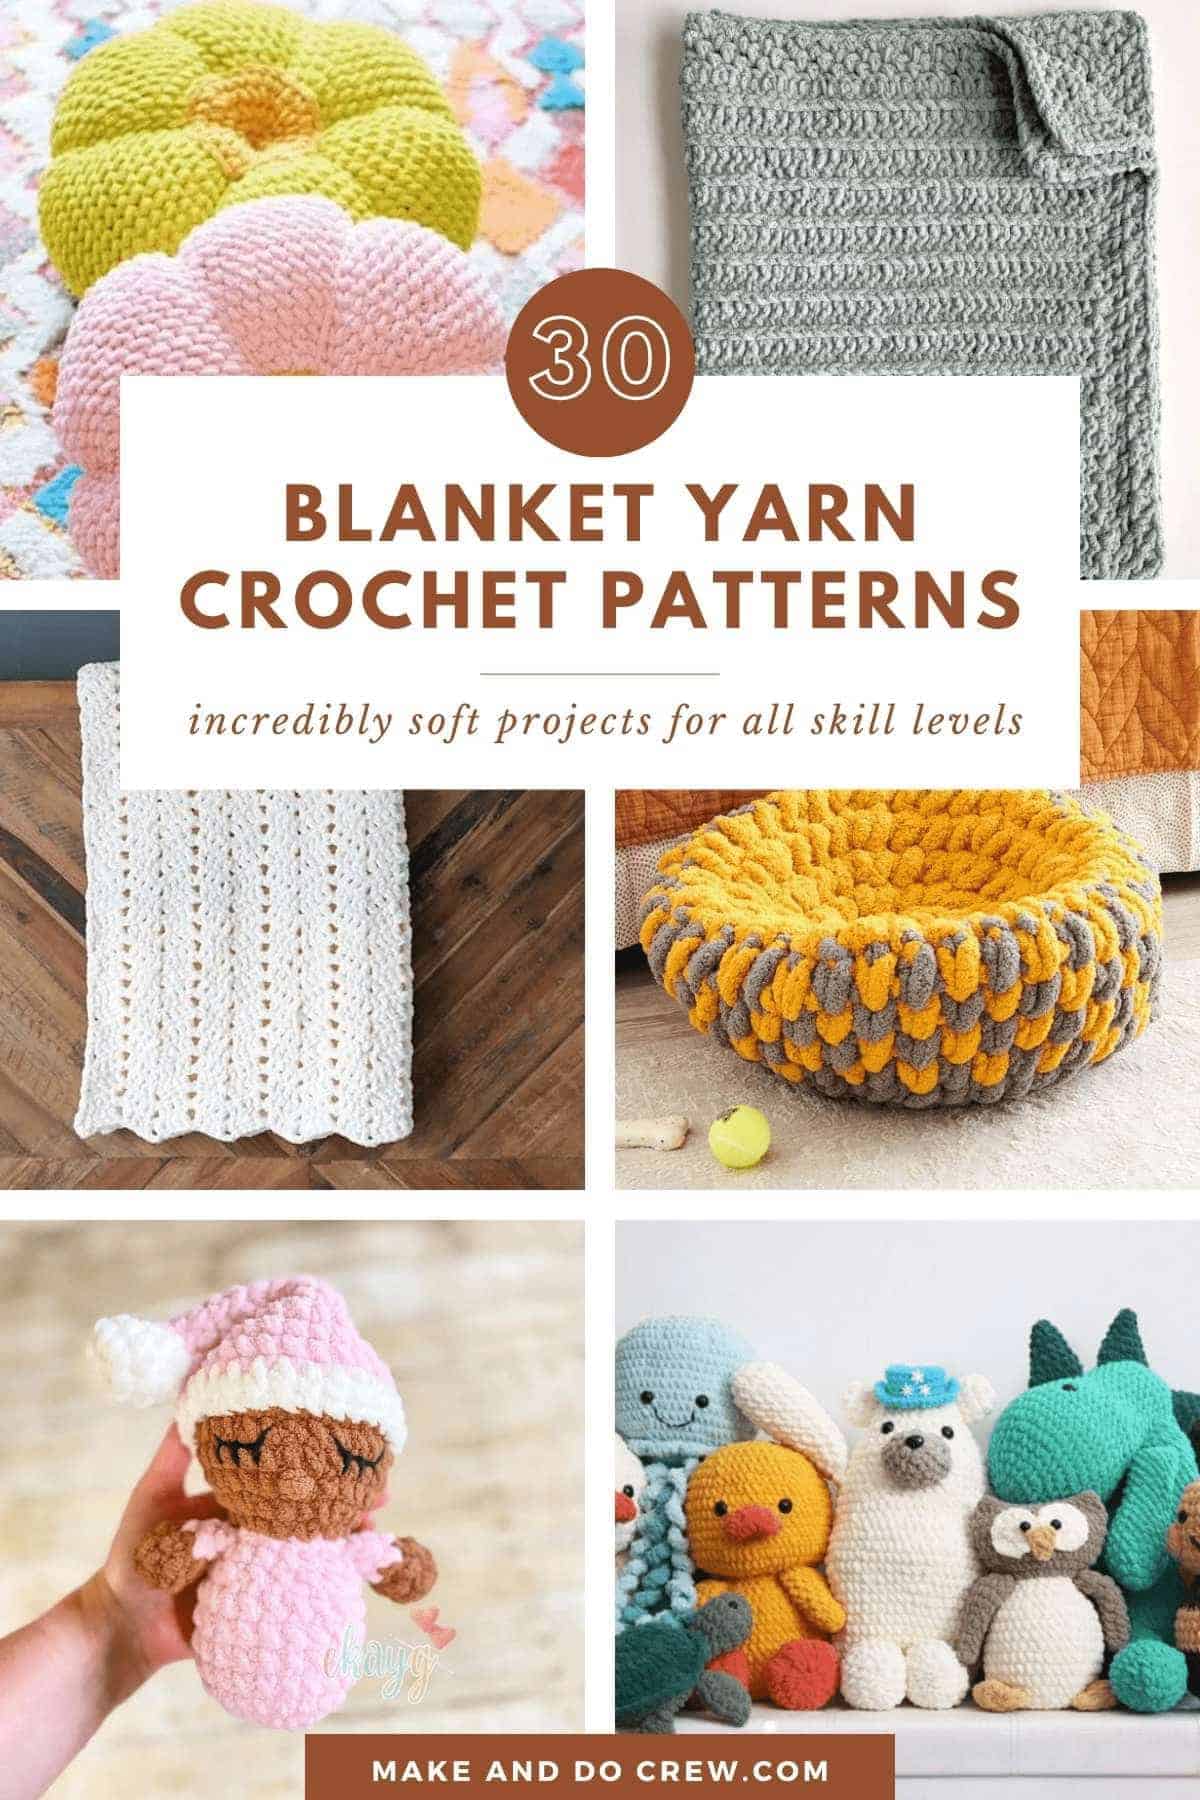 Bernat blanket yarn crochet patterns.